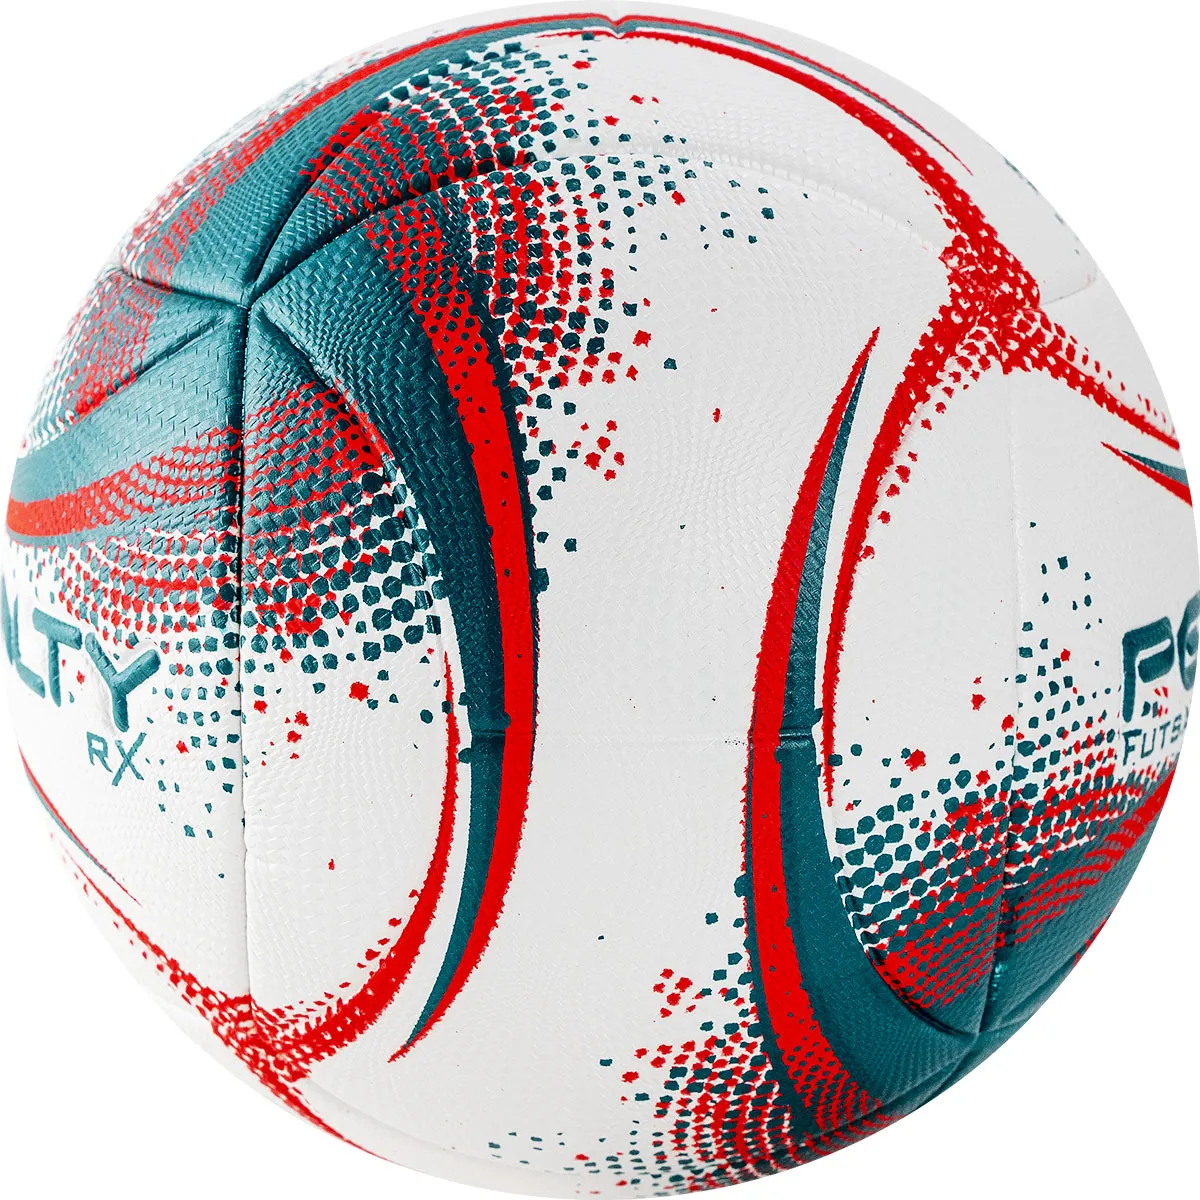 Реальное фото Мяч футзальный Penalty Futsal 500 RX XXI №4 бело-зелено-красный 5212991920-U от магазина СпортЕВ